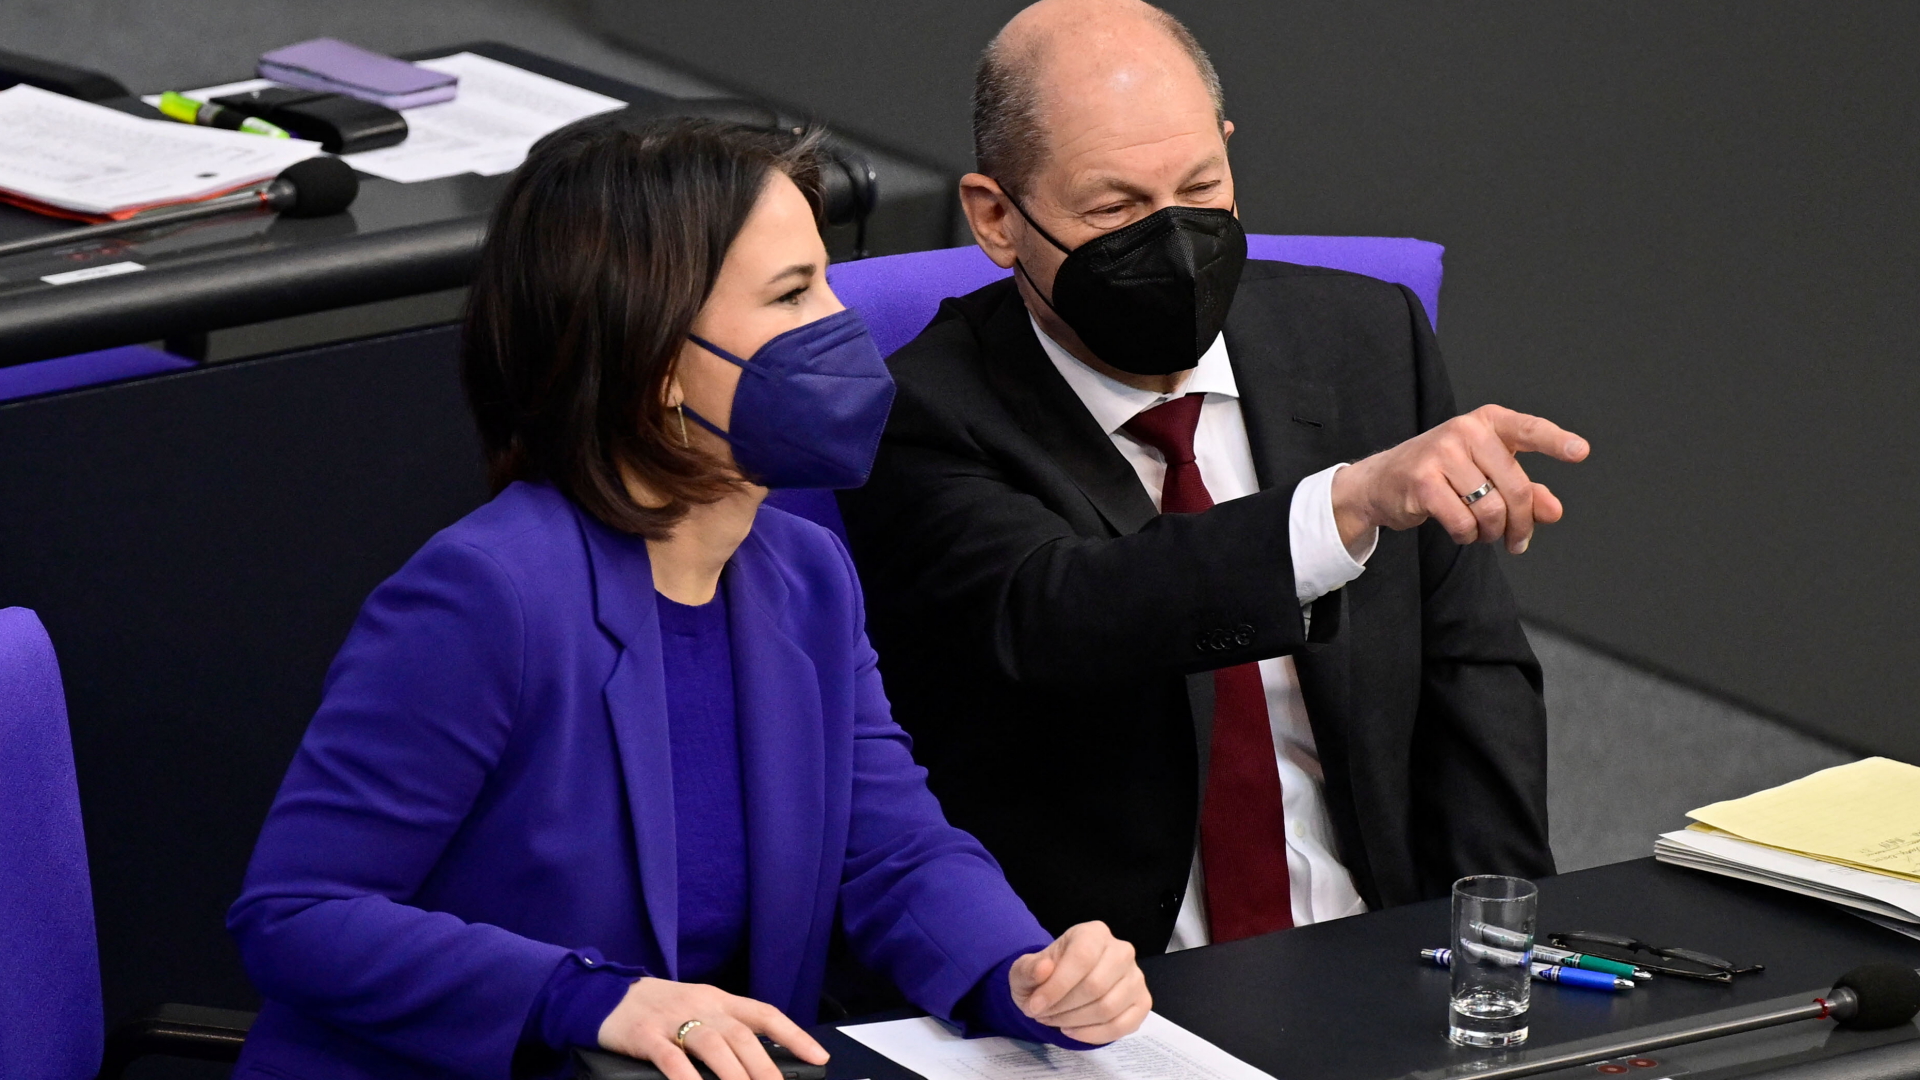 Bundeskanzler Olaf Scholz deutet auf etwas bei einer Sitzung des Bundestages, neben ihm sitzt Bundesaußenministerin Annalena Baerbock. Beide tragen Corona-Schutzmasken.